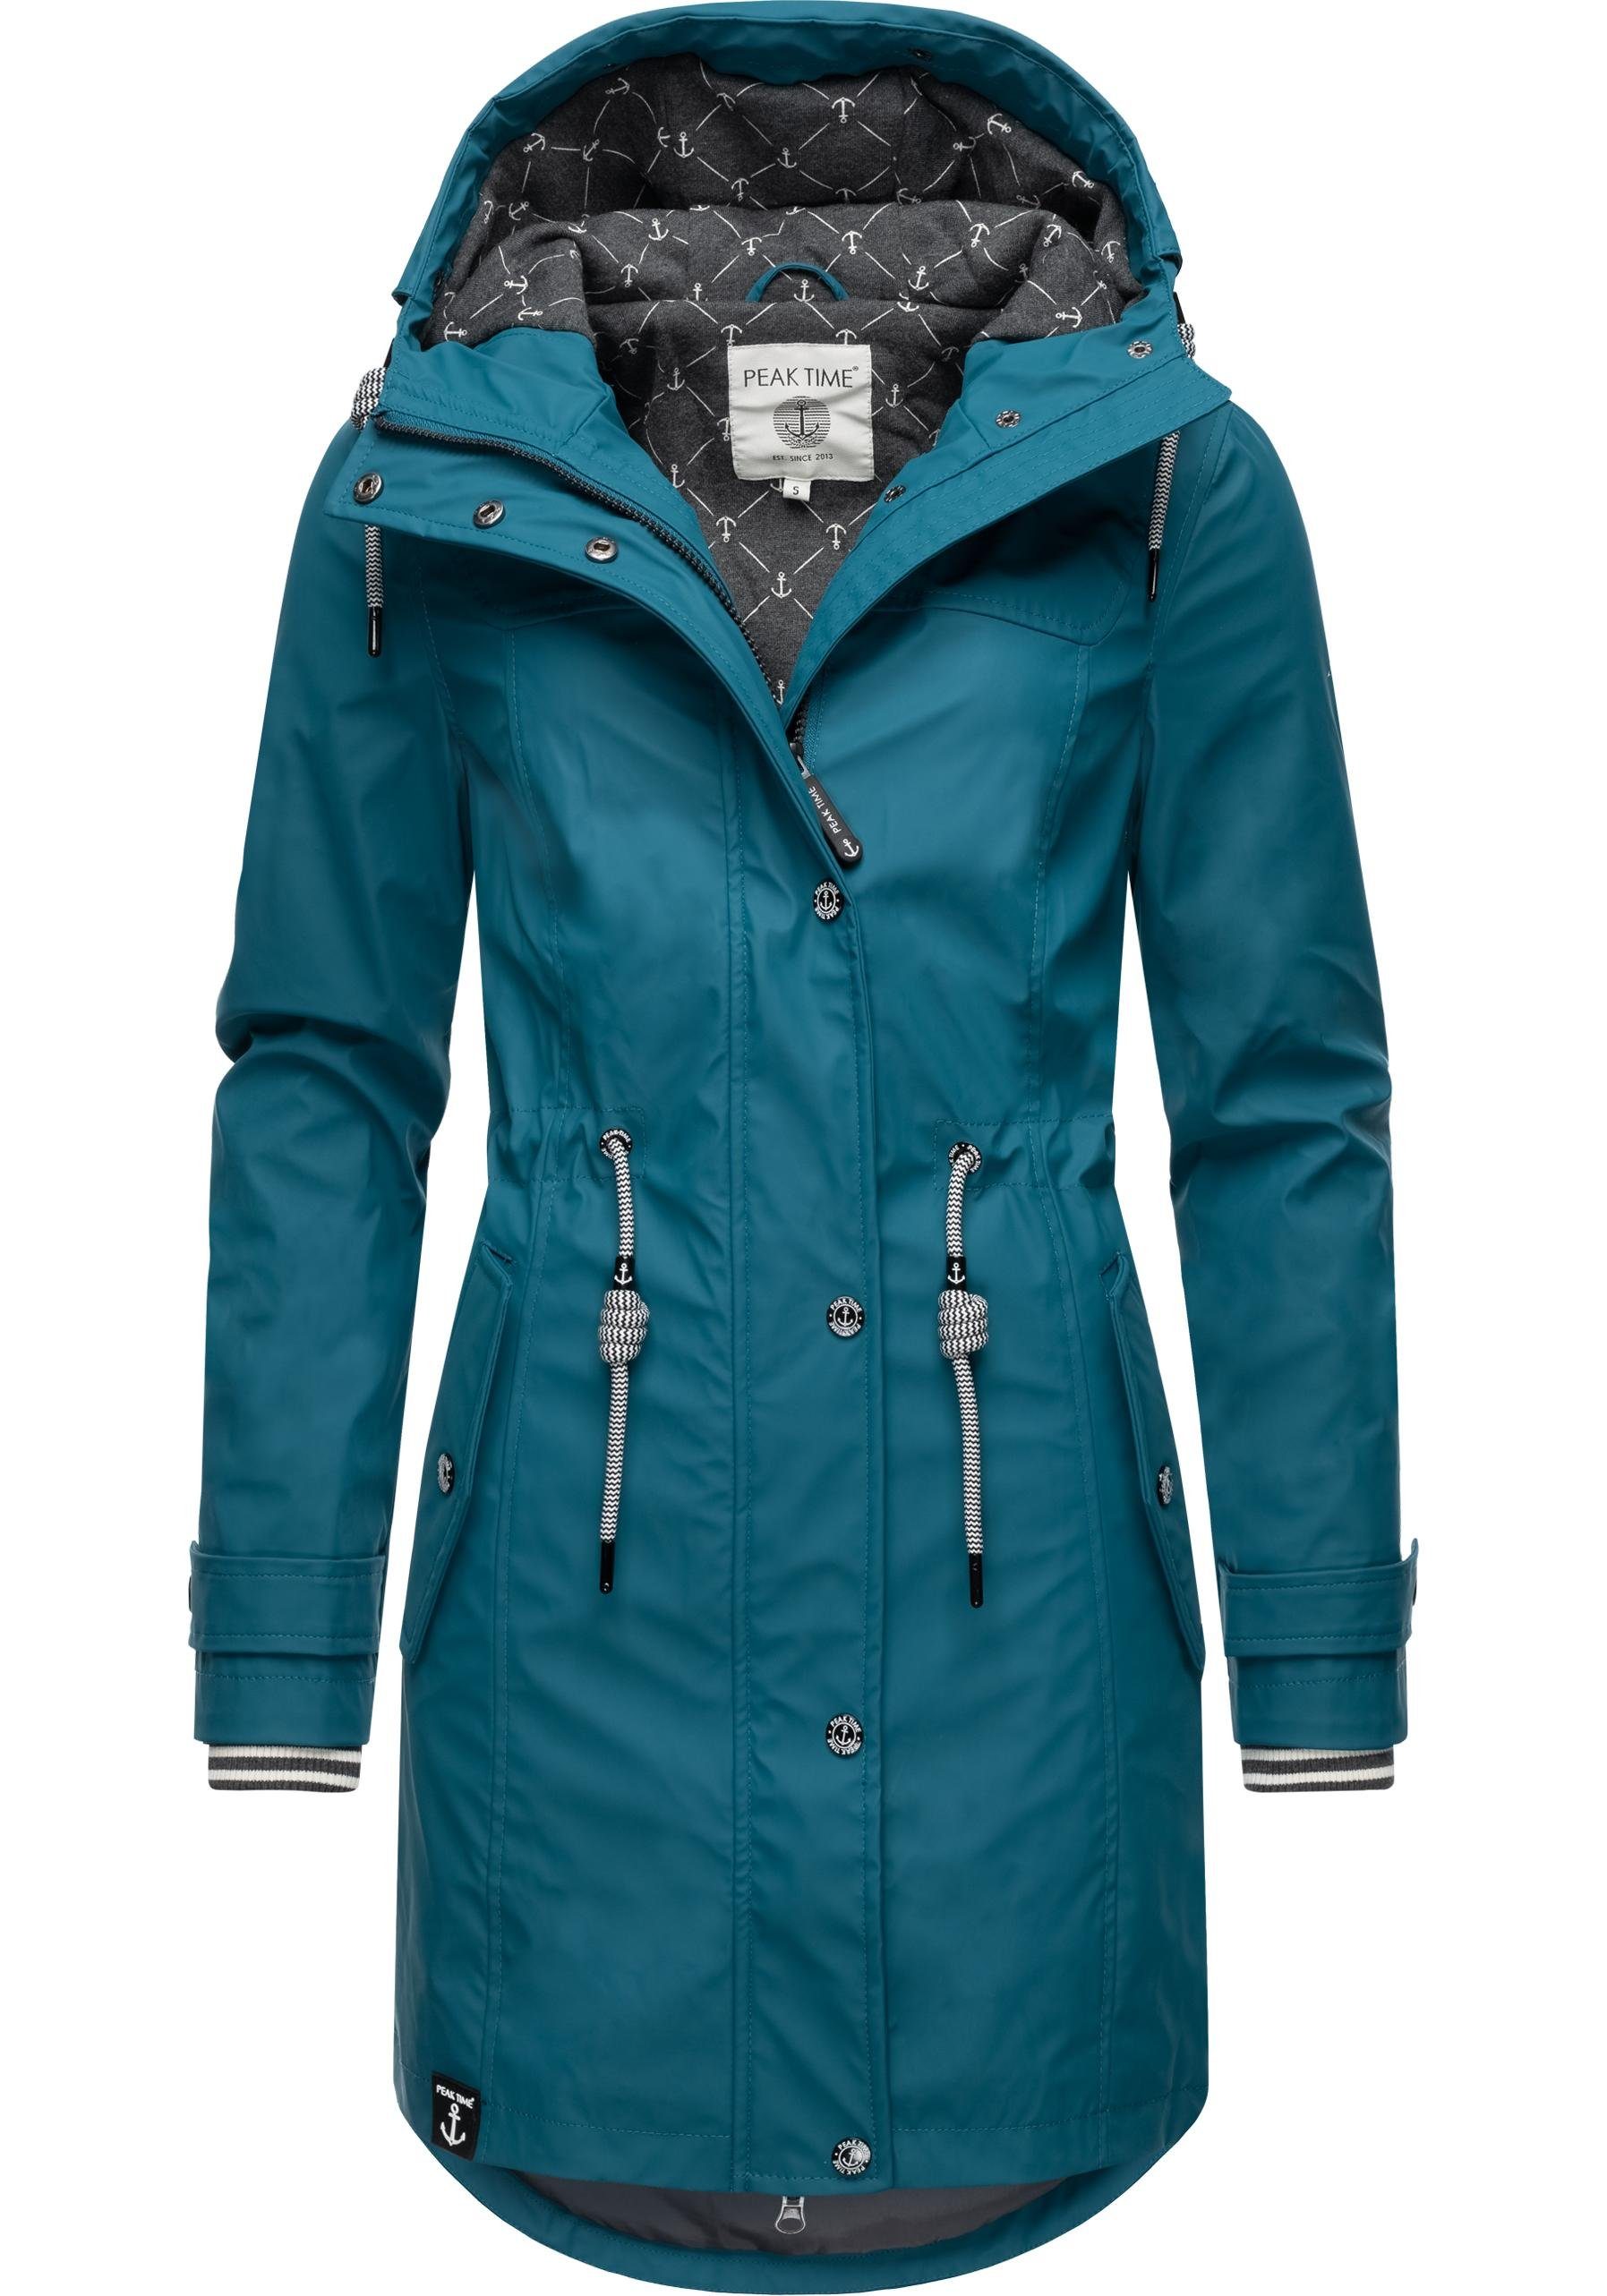 für taillierter Damen, stylisch Länge & Damen perfekter mit Regenjacke L60042 Taillenzugband Jacke praktischem PEAK TIME Regenmantel